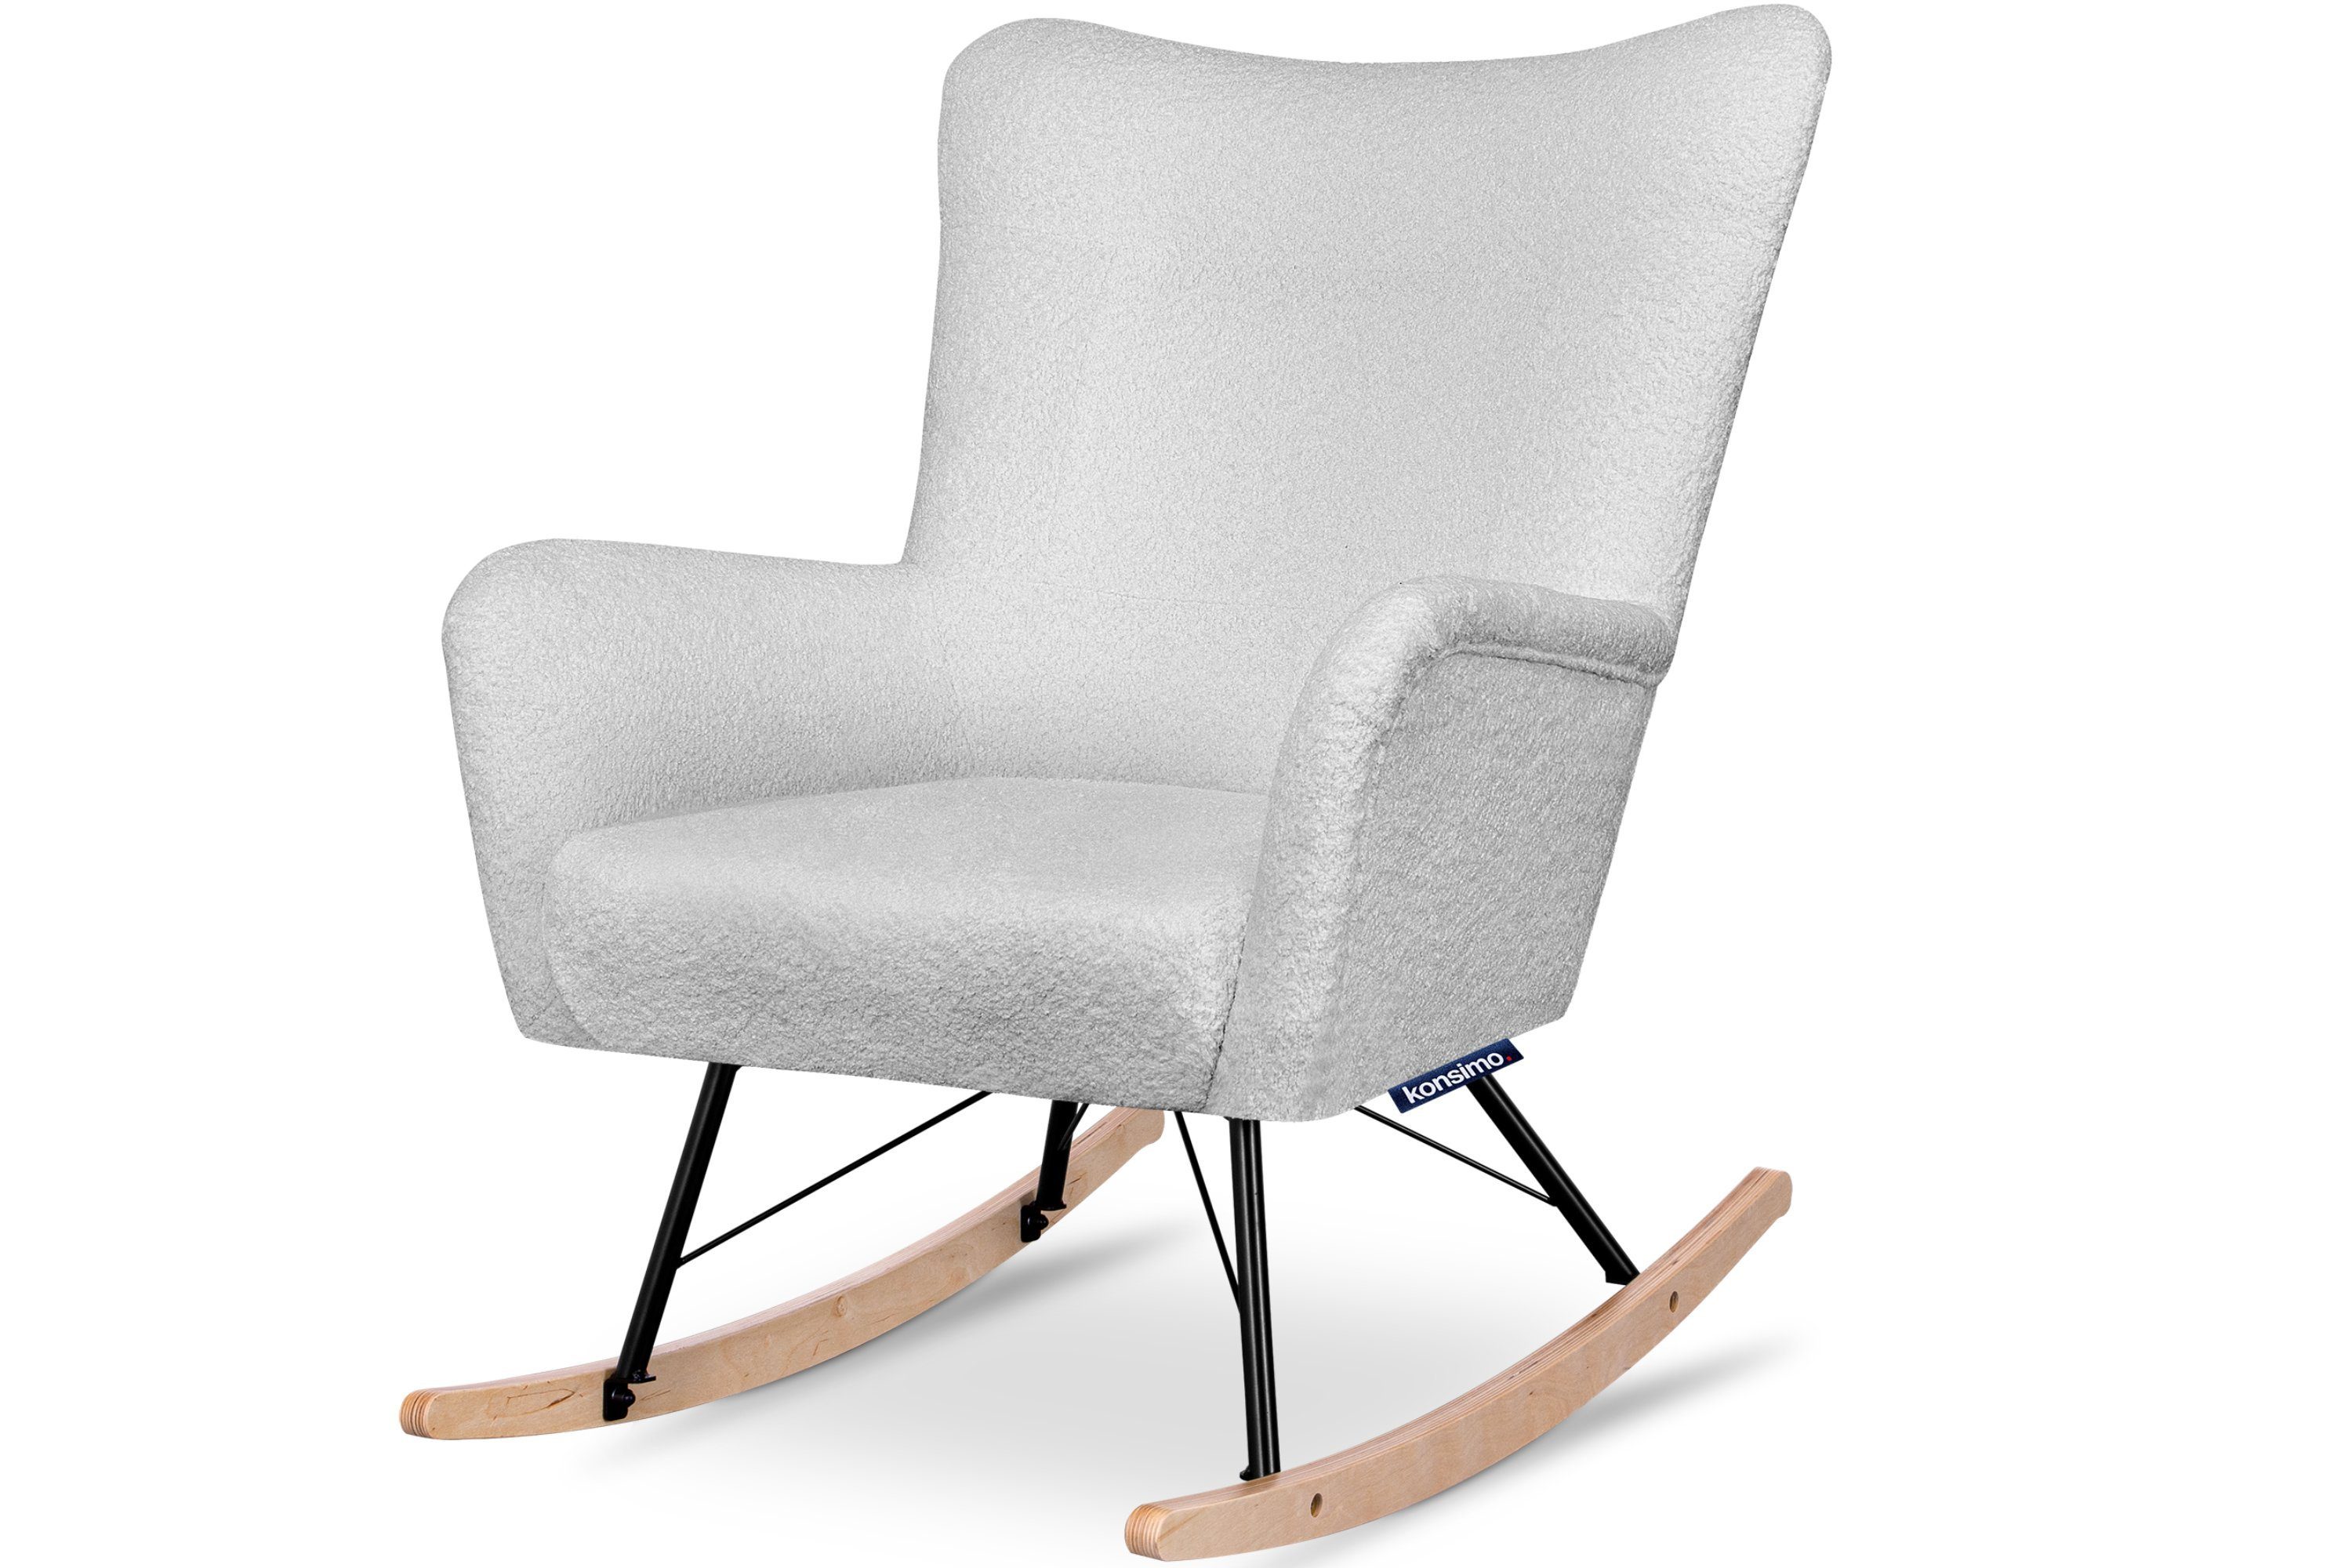 Konsimo Schaukelsessel ADDUCTI Stillsessel, breiter Sitz für mehr Komfort, ein Schaukelstuhl für jeden Stil, Hergestellt in EU hellgrau | hellgrau | Schaukelsessel